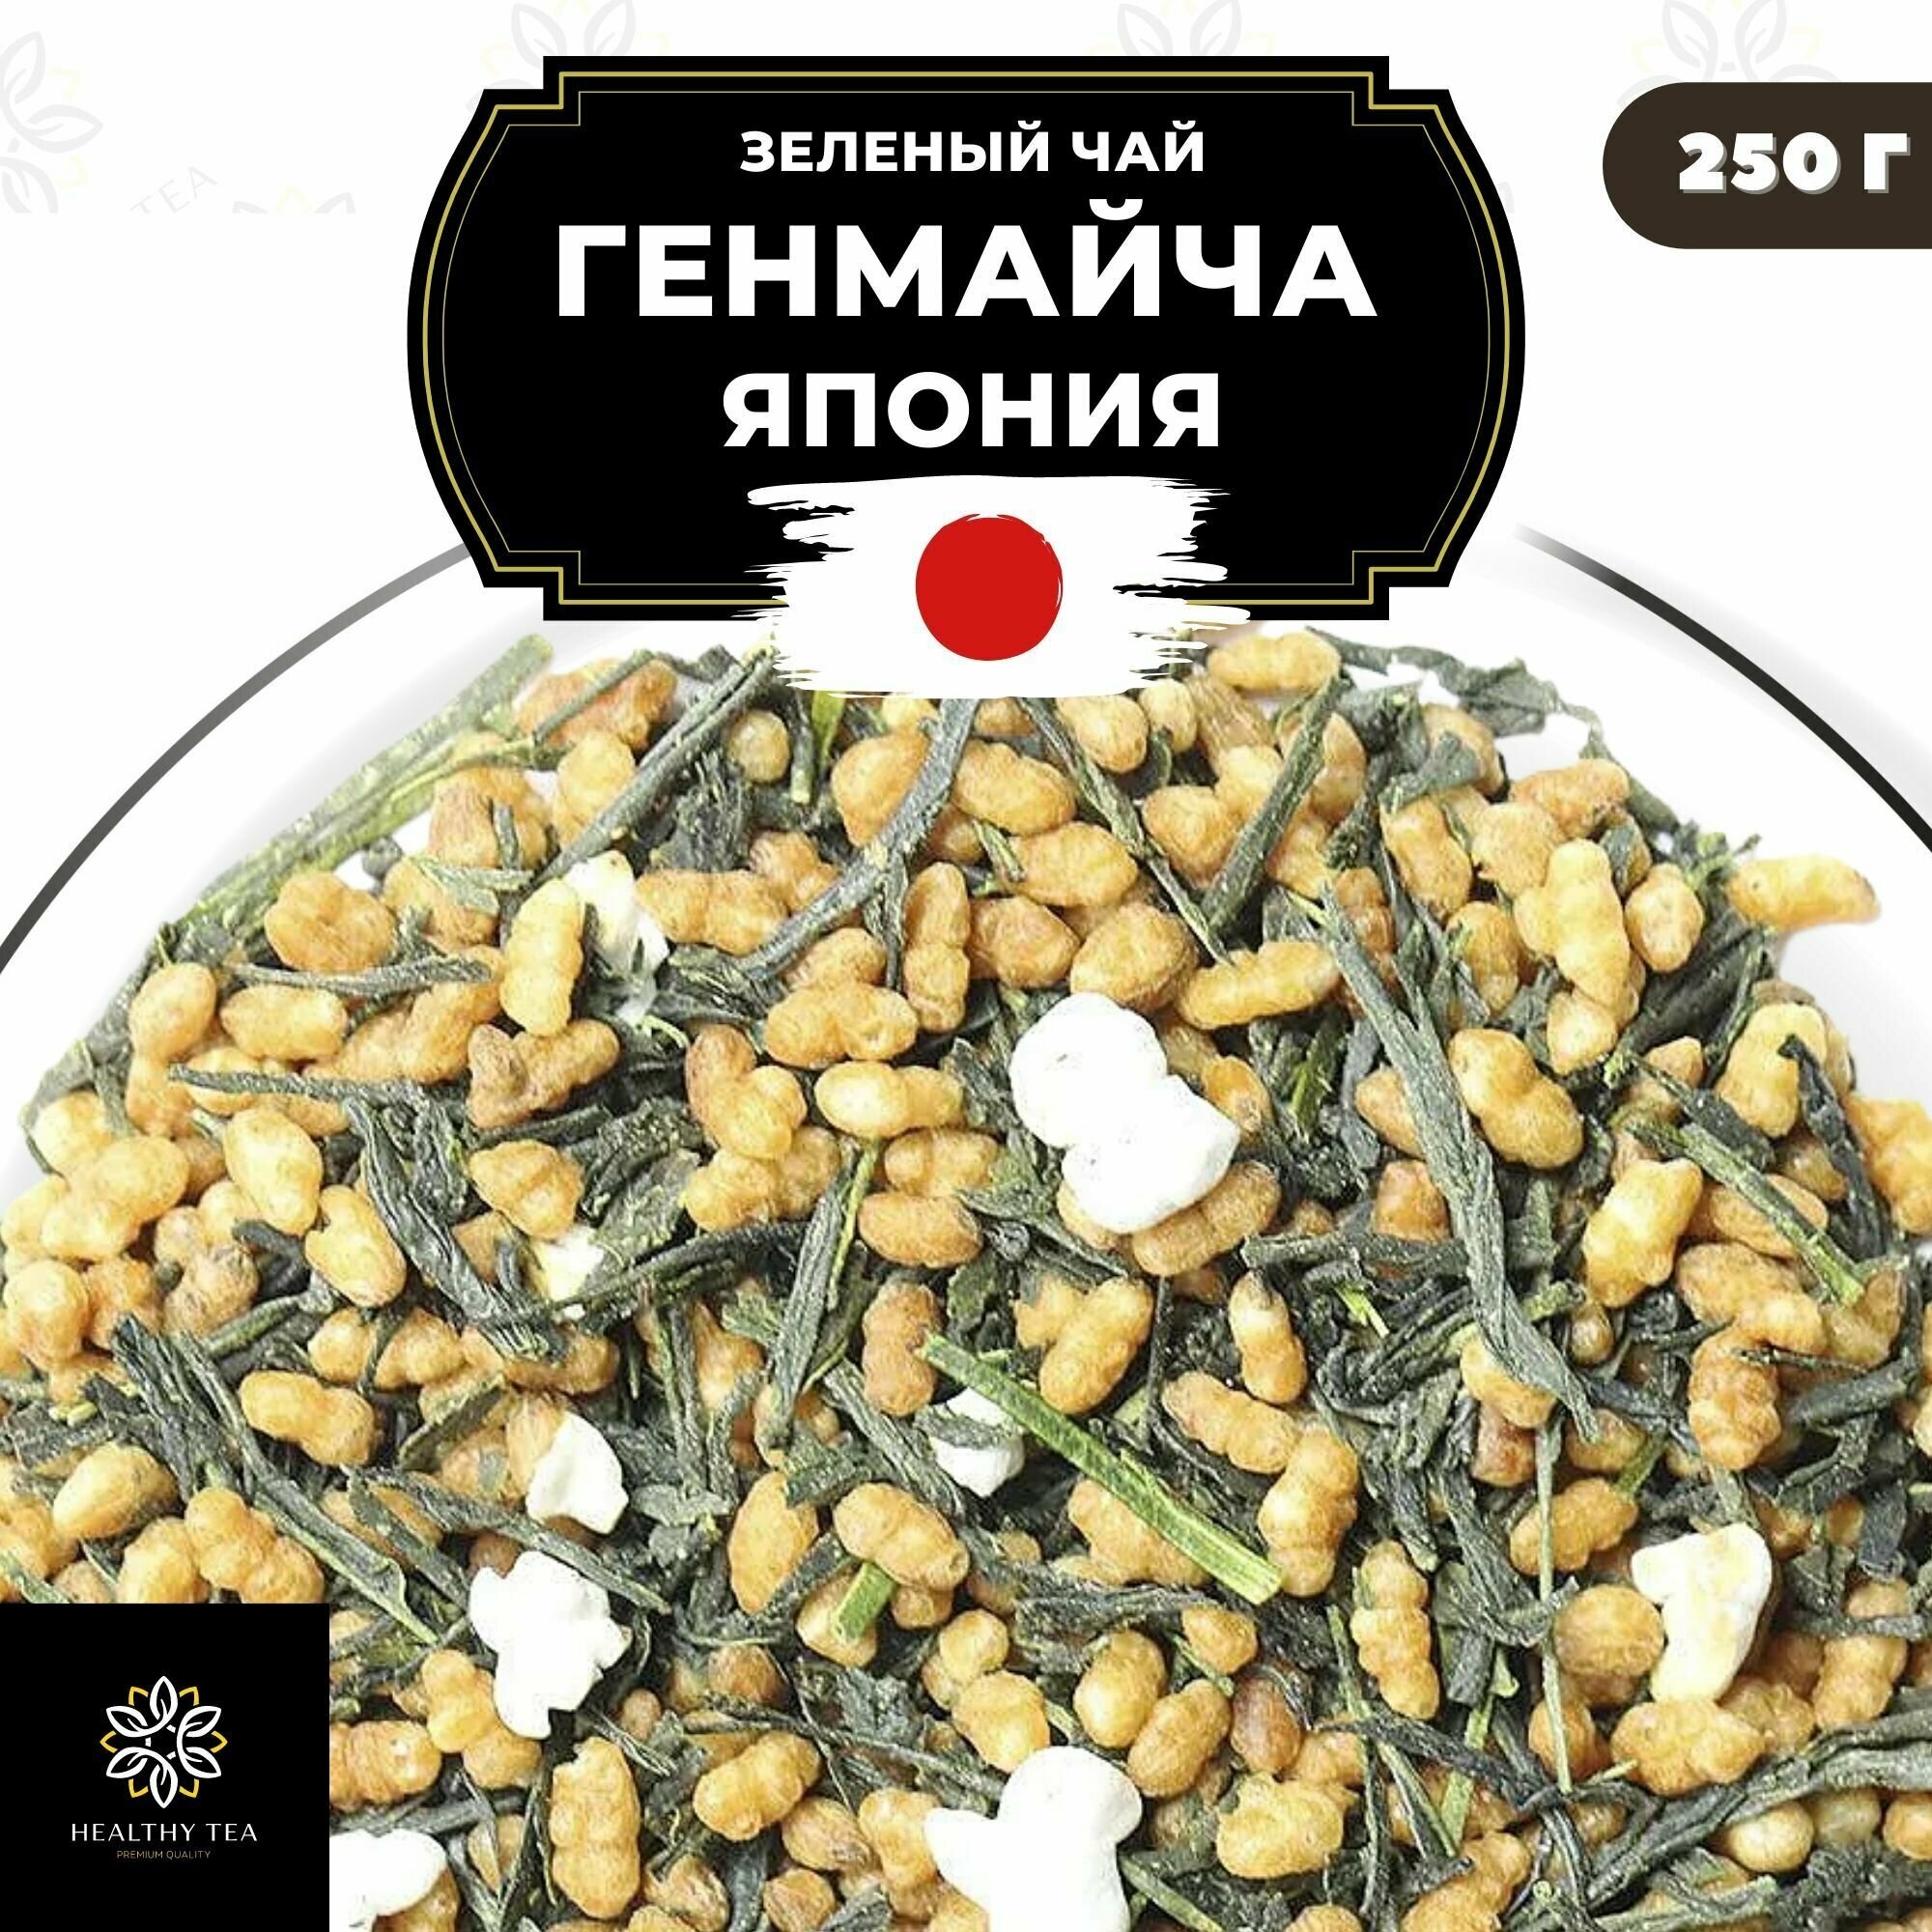 Японский зеленый чай без добавок Генмайча (Япония) Полезный чай / HEALTHY TEA, 250 г